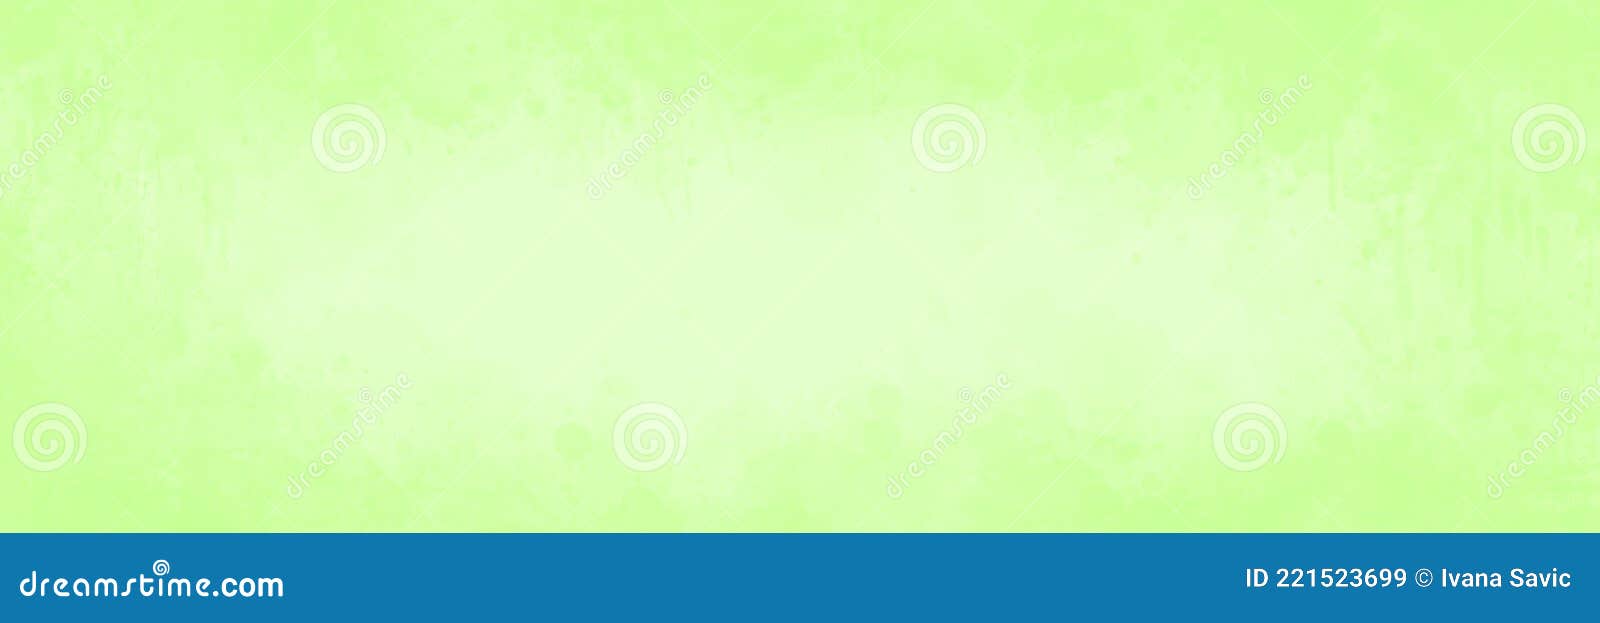 Fondo Salpicado De Color Verde Limón Pastel Abstracto Con Textura Tenue Y  Borde Luminoso Central Y De Viñeta Stock de ilustración - Ilustración de  frontera, pastoral: 221523699